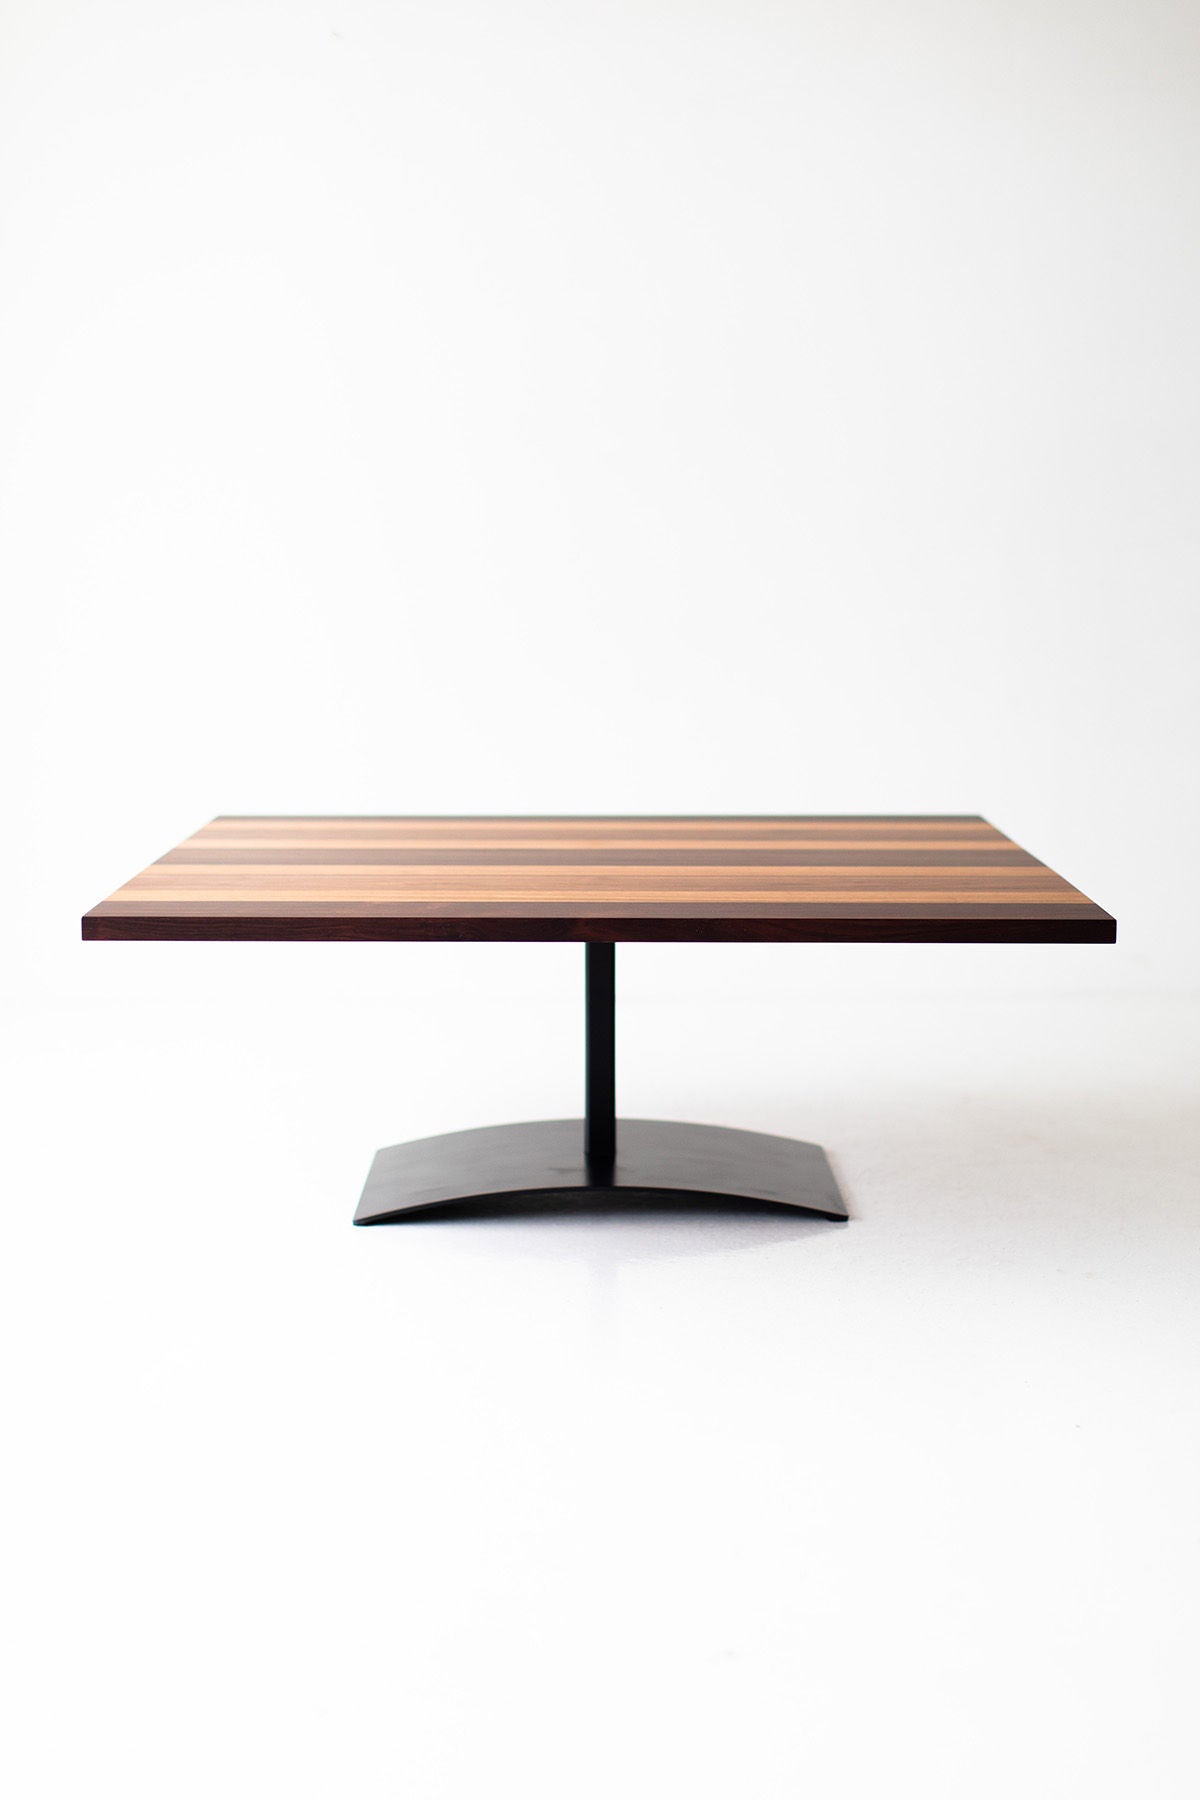 Milo-Baughman-Striped-Top-Coffee-Table-B3933-06